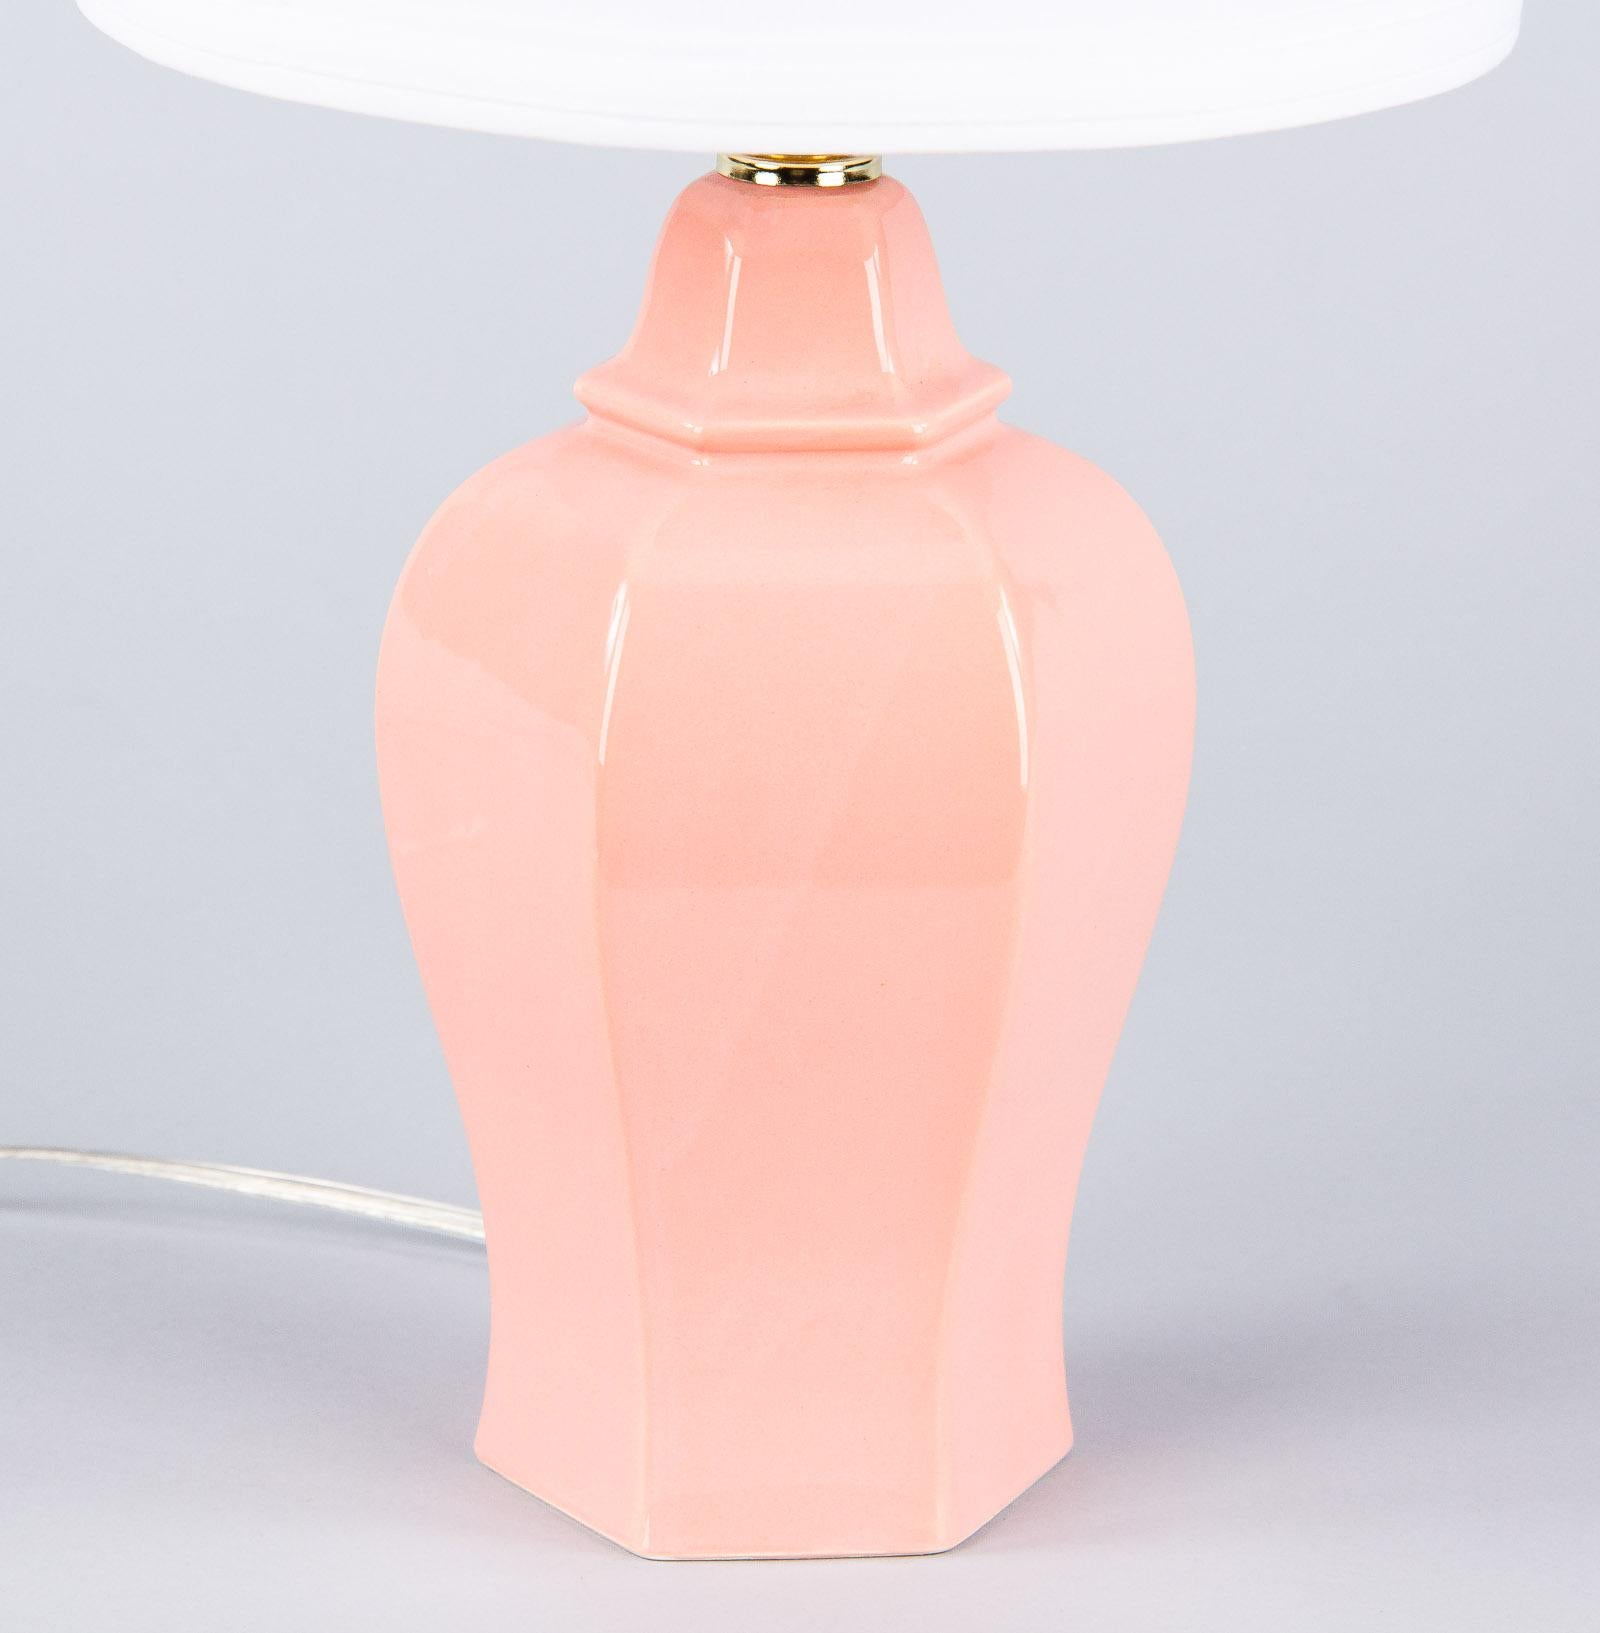 pink ceramic lamps